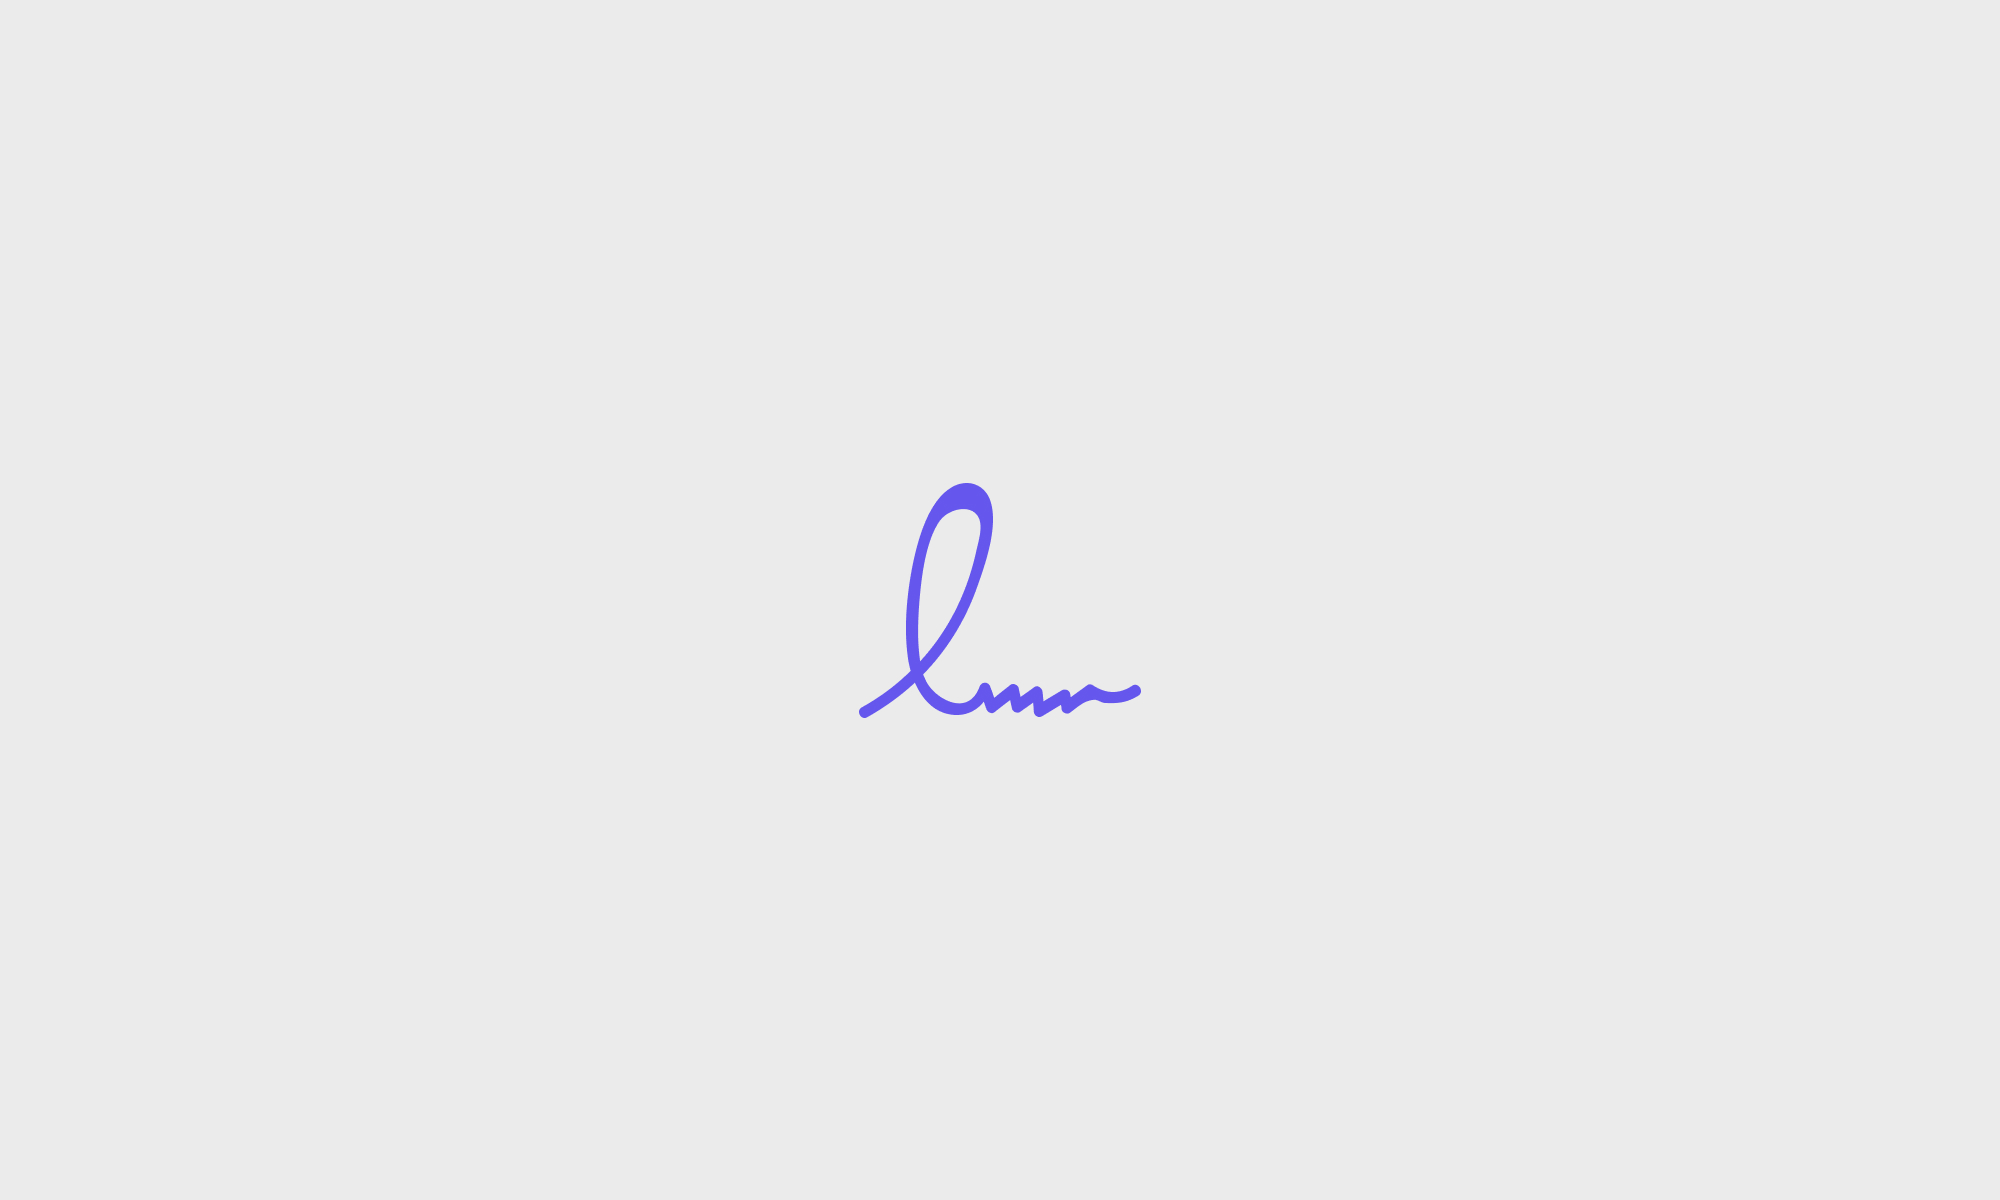 Logo as a monogram "l"